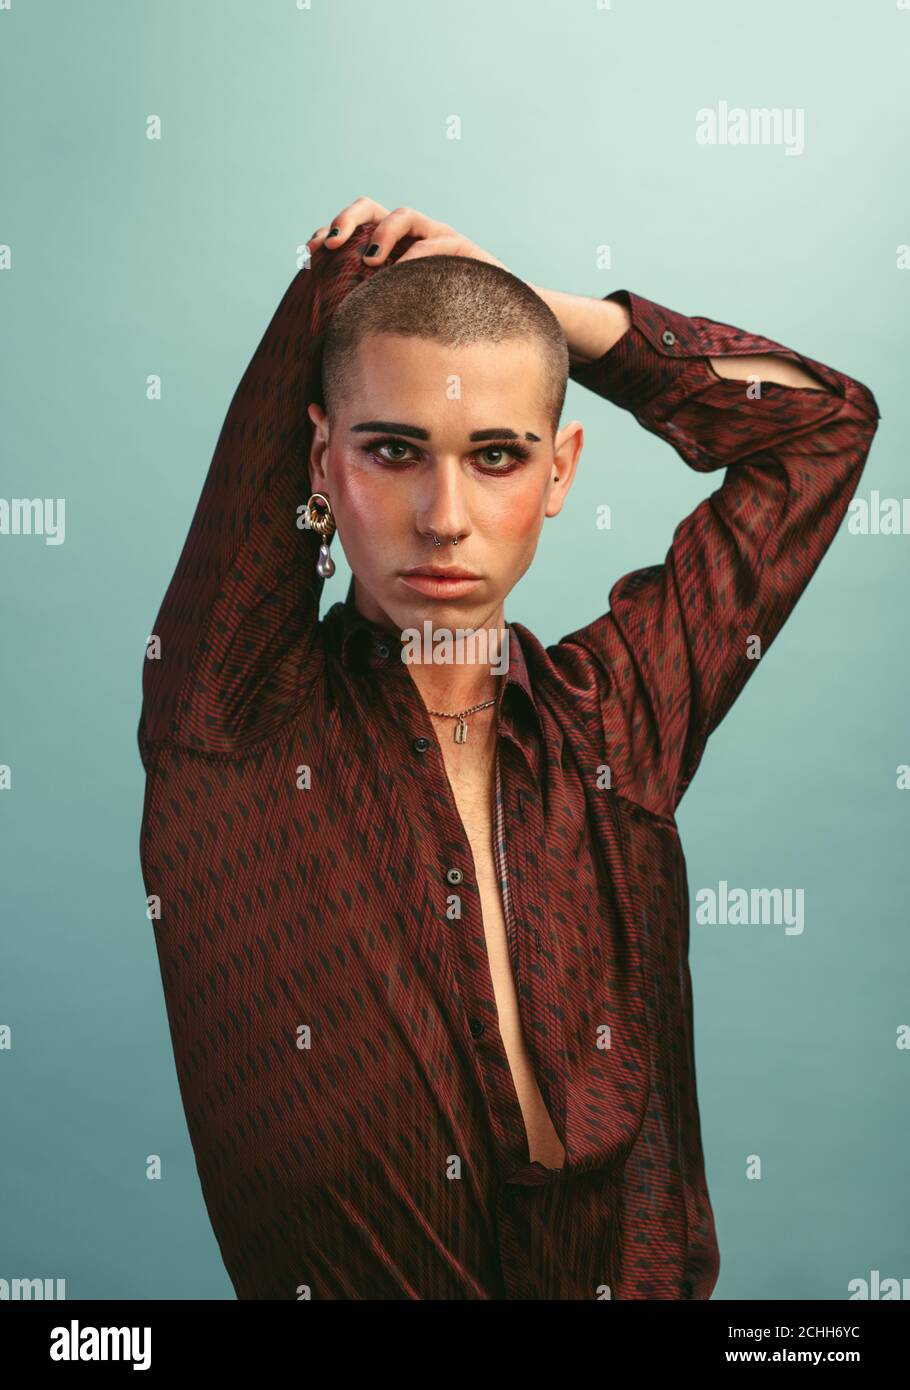 Homme gay avec maquillage portant des boucles d'oreilles debout au studio.  Homme transgenre en chemise de soie posant sur fond bleu Photo Stock - Alamy